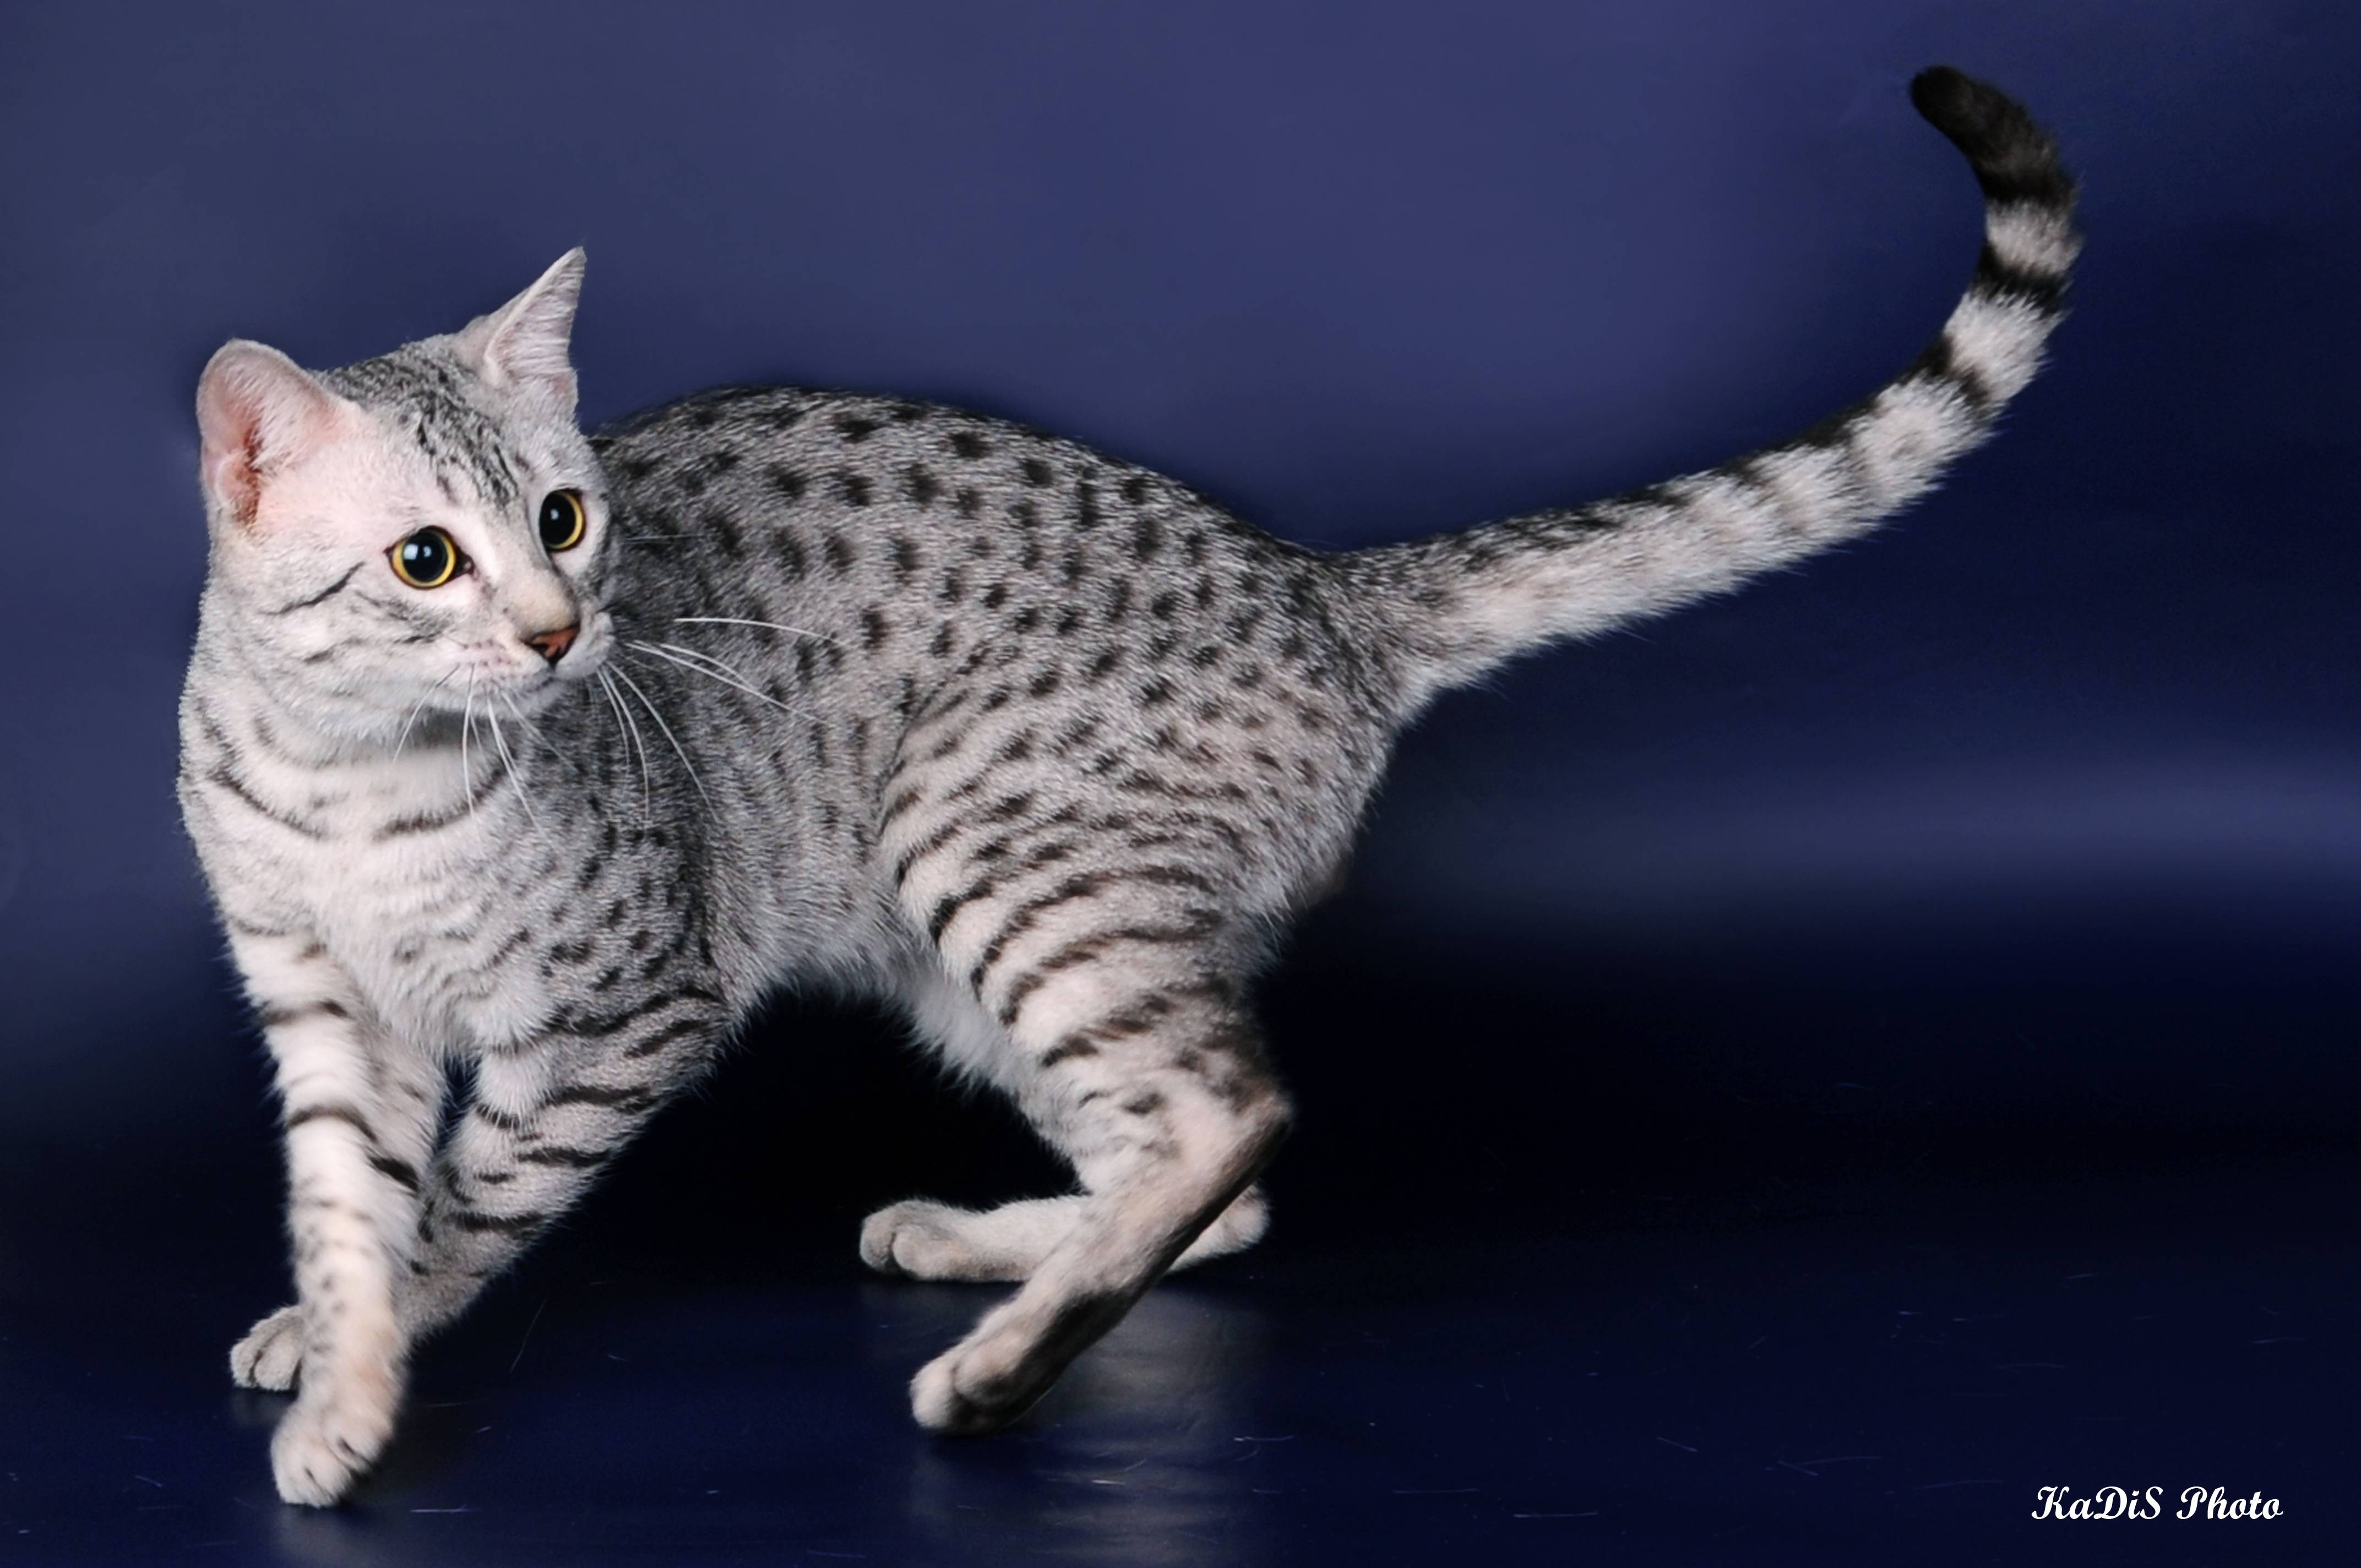 Египетская кошка мау: описание породы, характер, здоровье